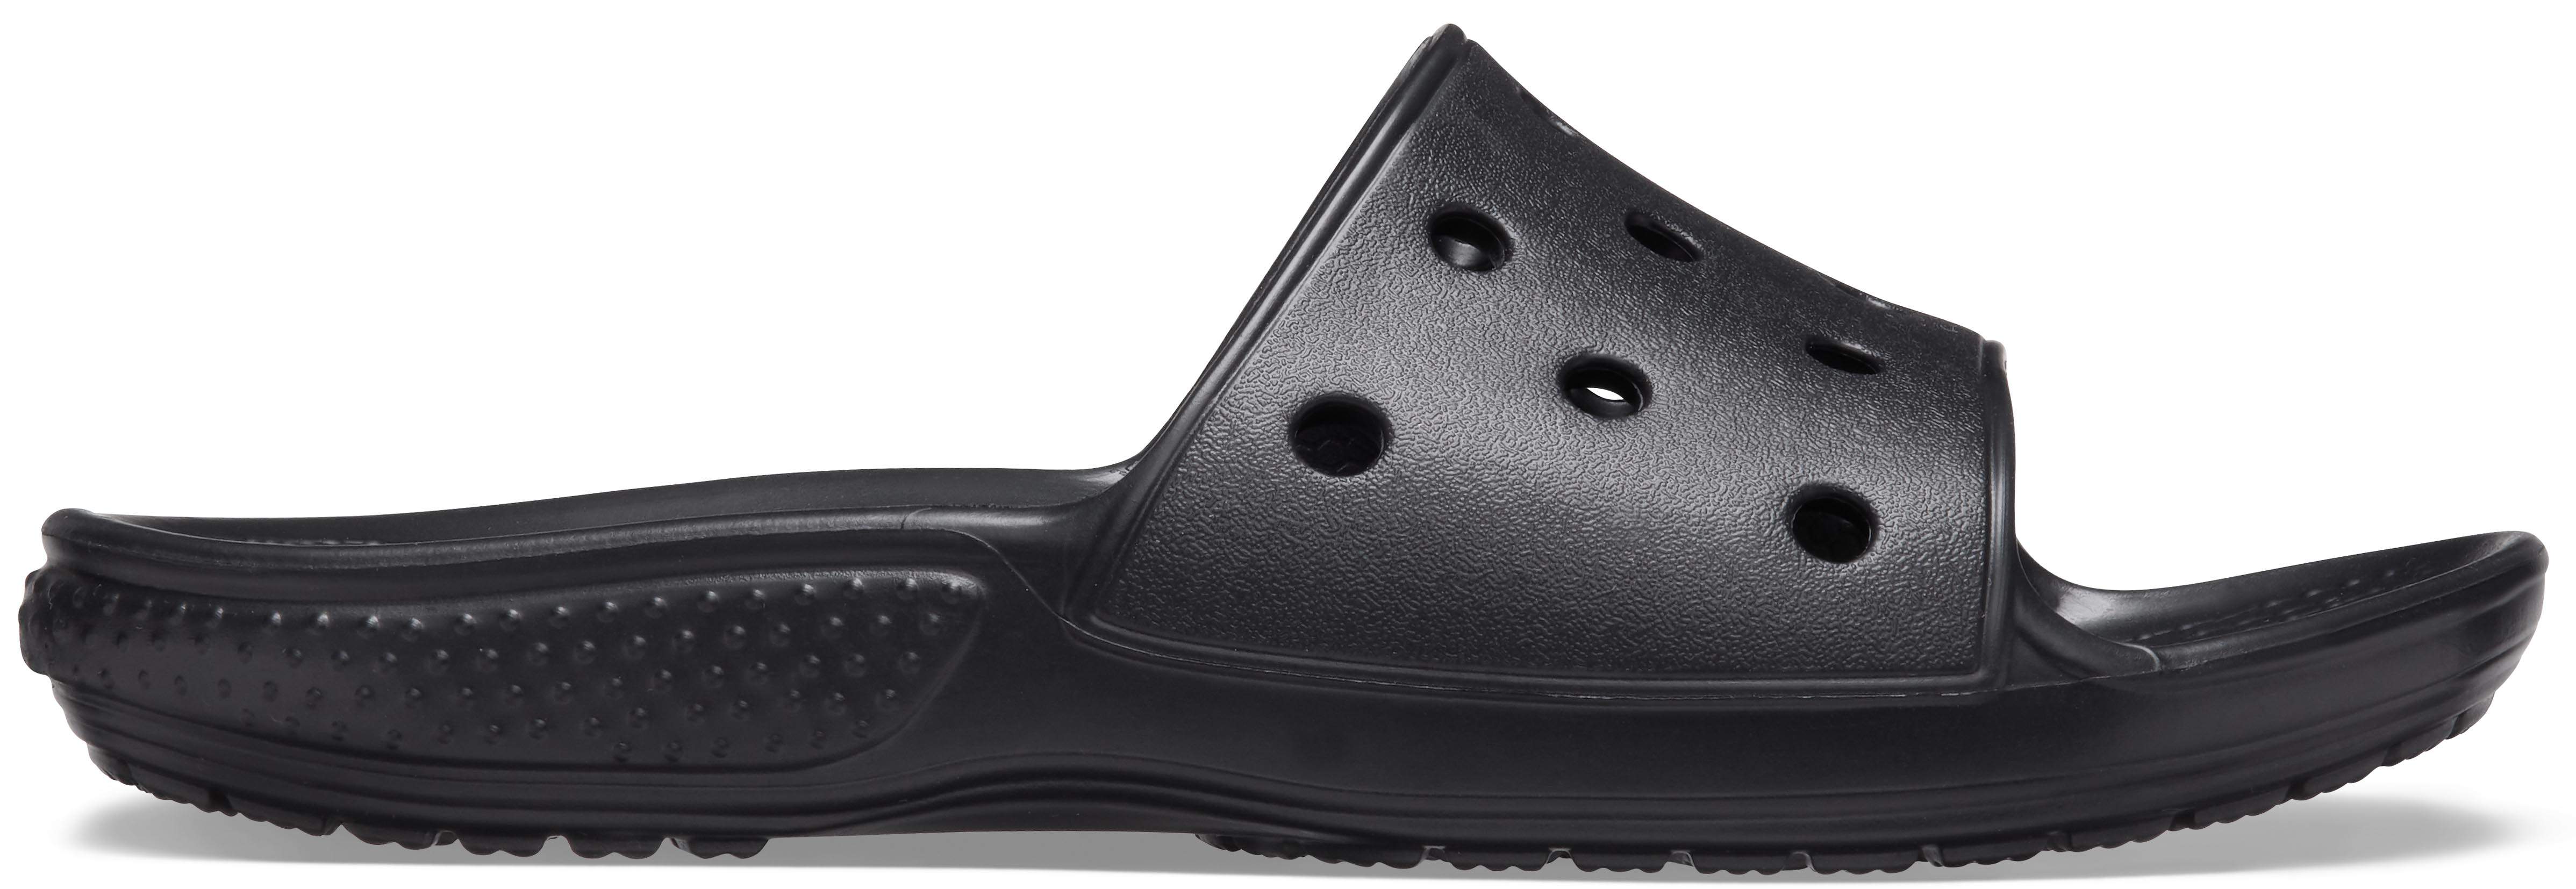 crocs slides for kids